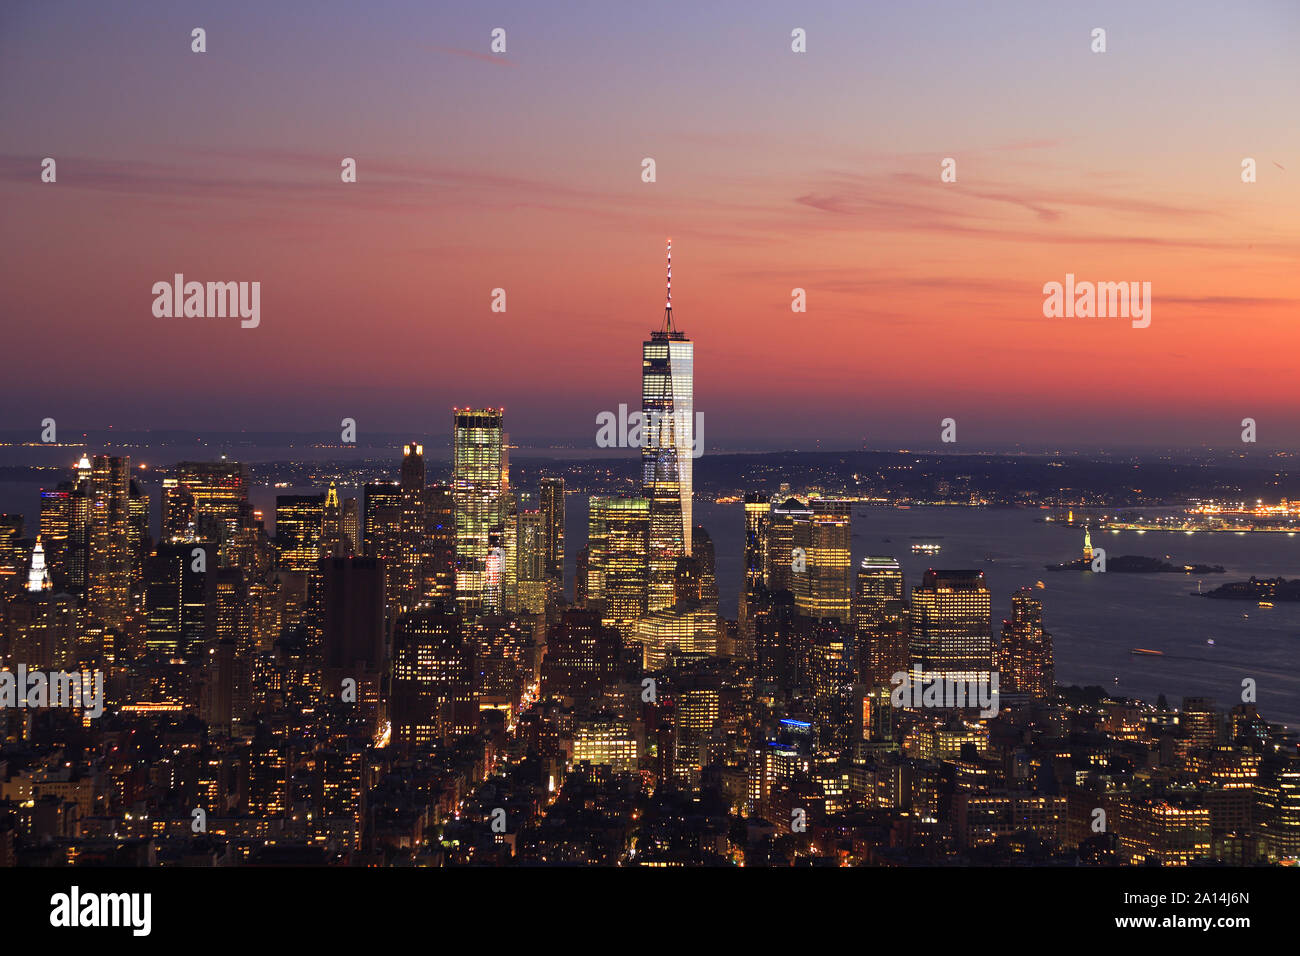 Vue aérienne de la ville de New York, Manhattan skyline allumé au coucher du soleil dont un World Trade Center et Liberty Island, États-Unis Banque D'Images